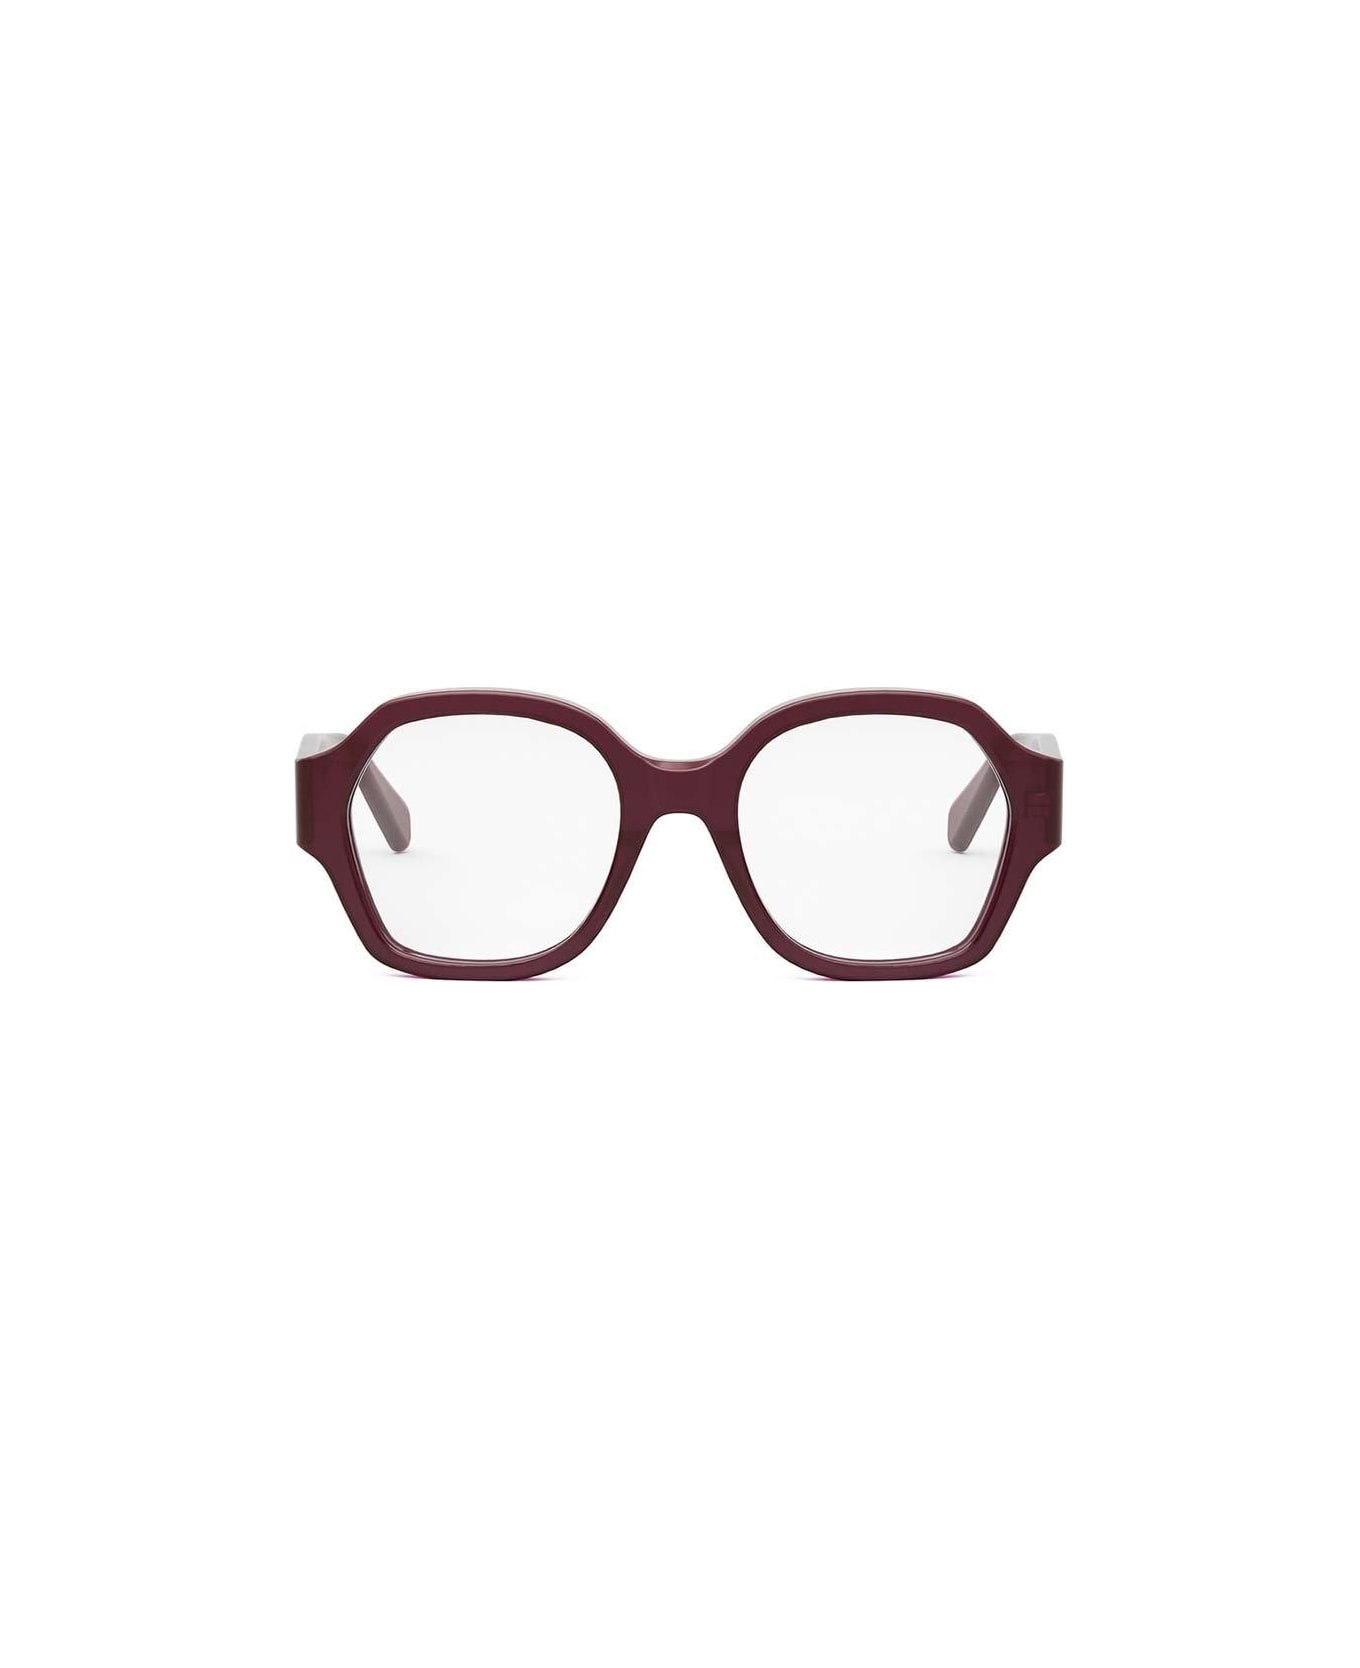 Celine Square Frame Glasses - 069 アイウェア